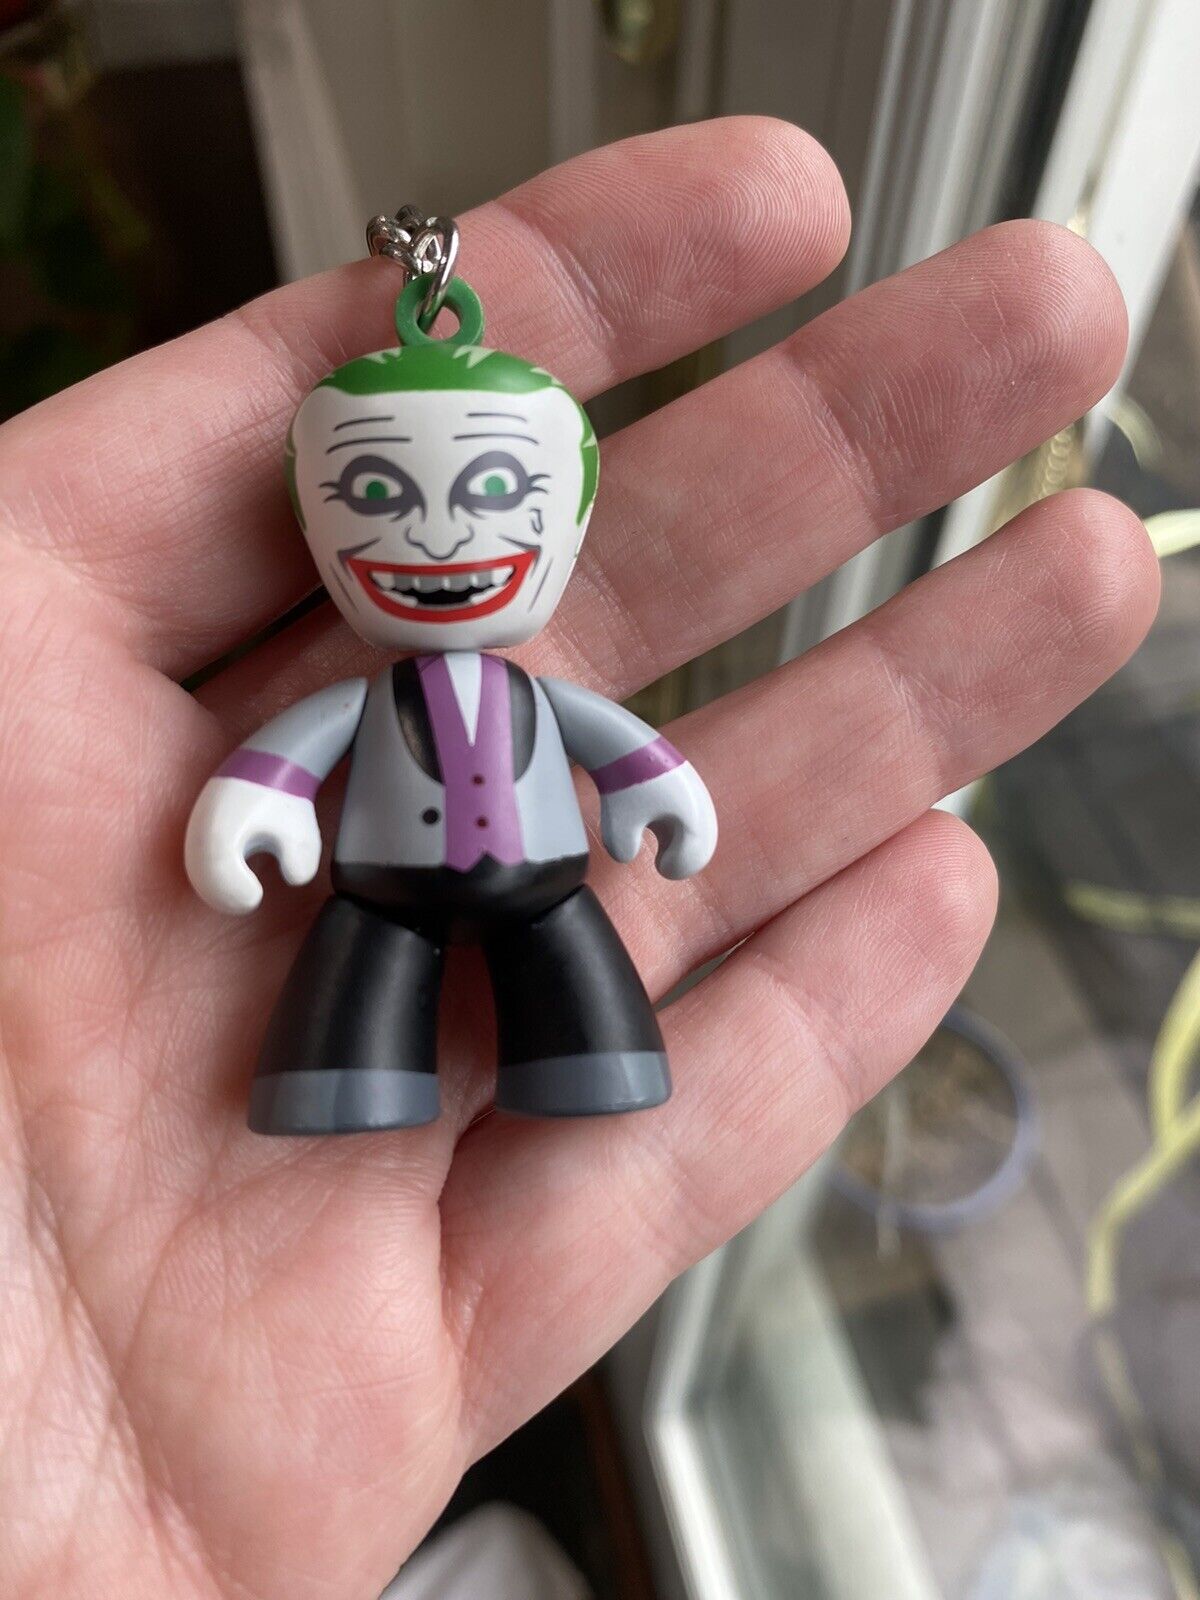 The Joker Mezco Mez-itz DC Universe Keychain Suicide Squad Figure 2010 